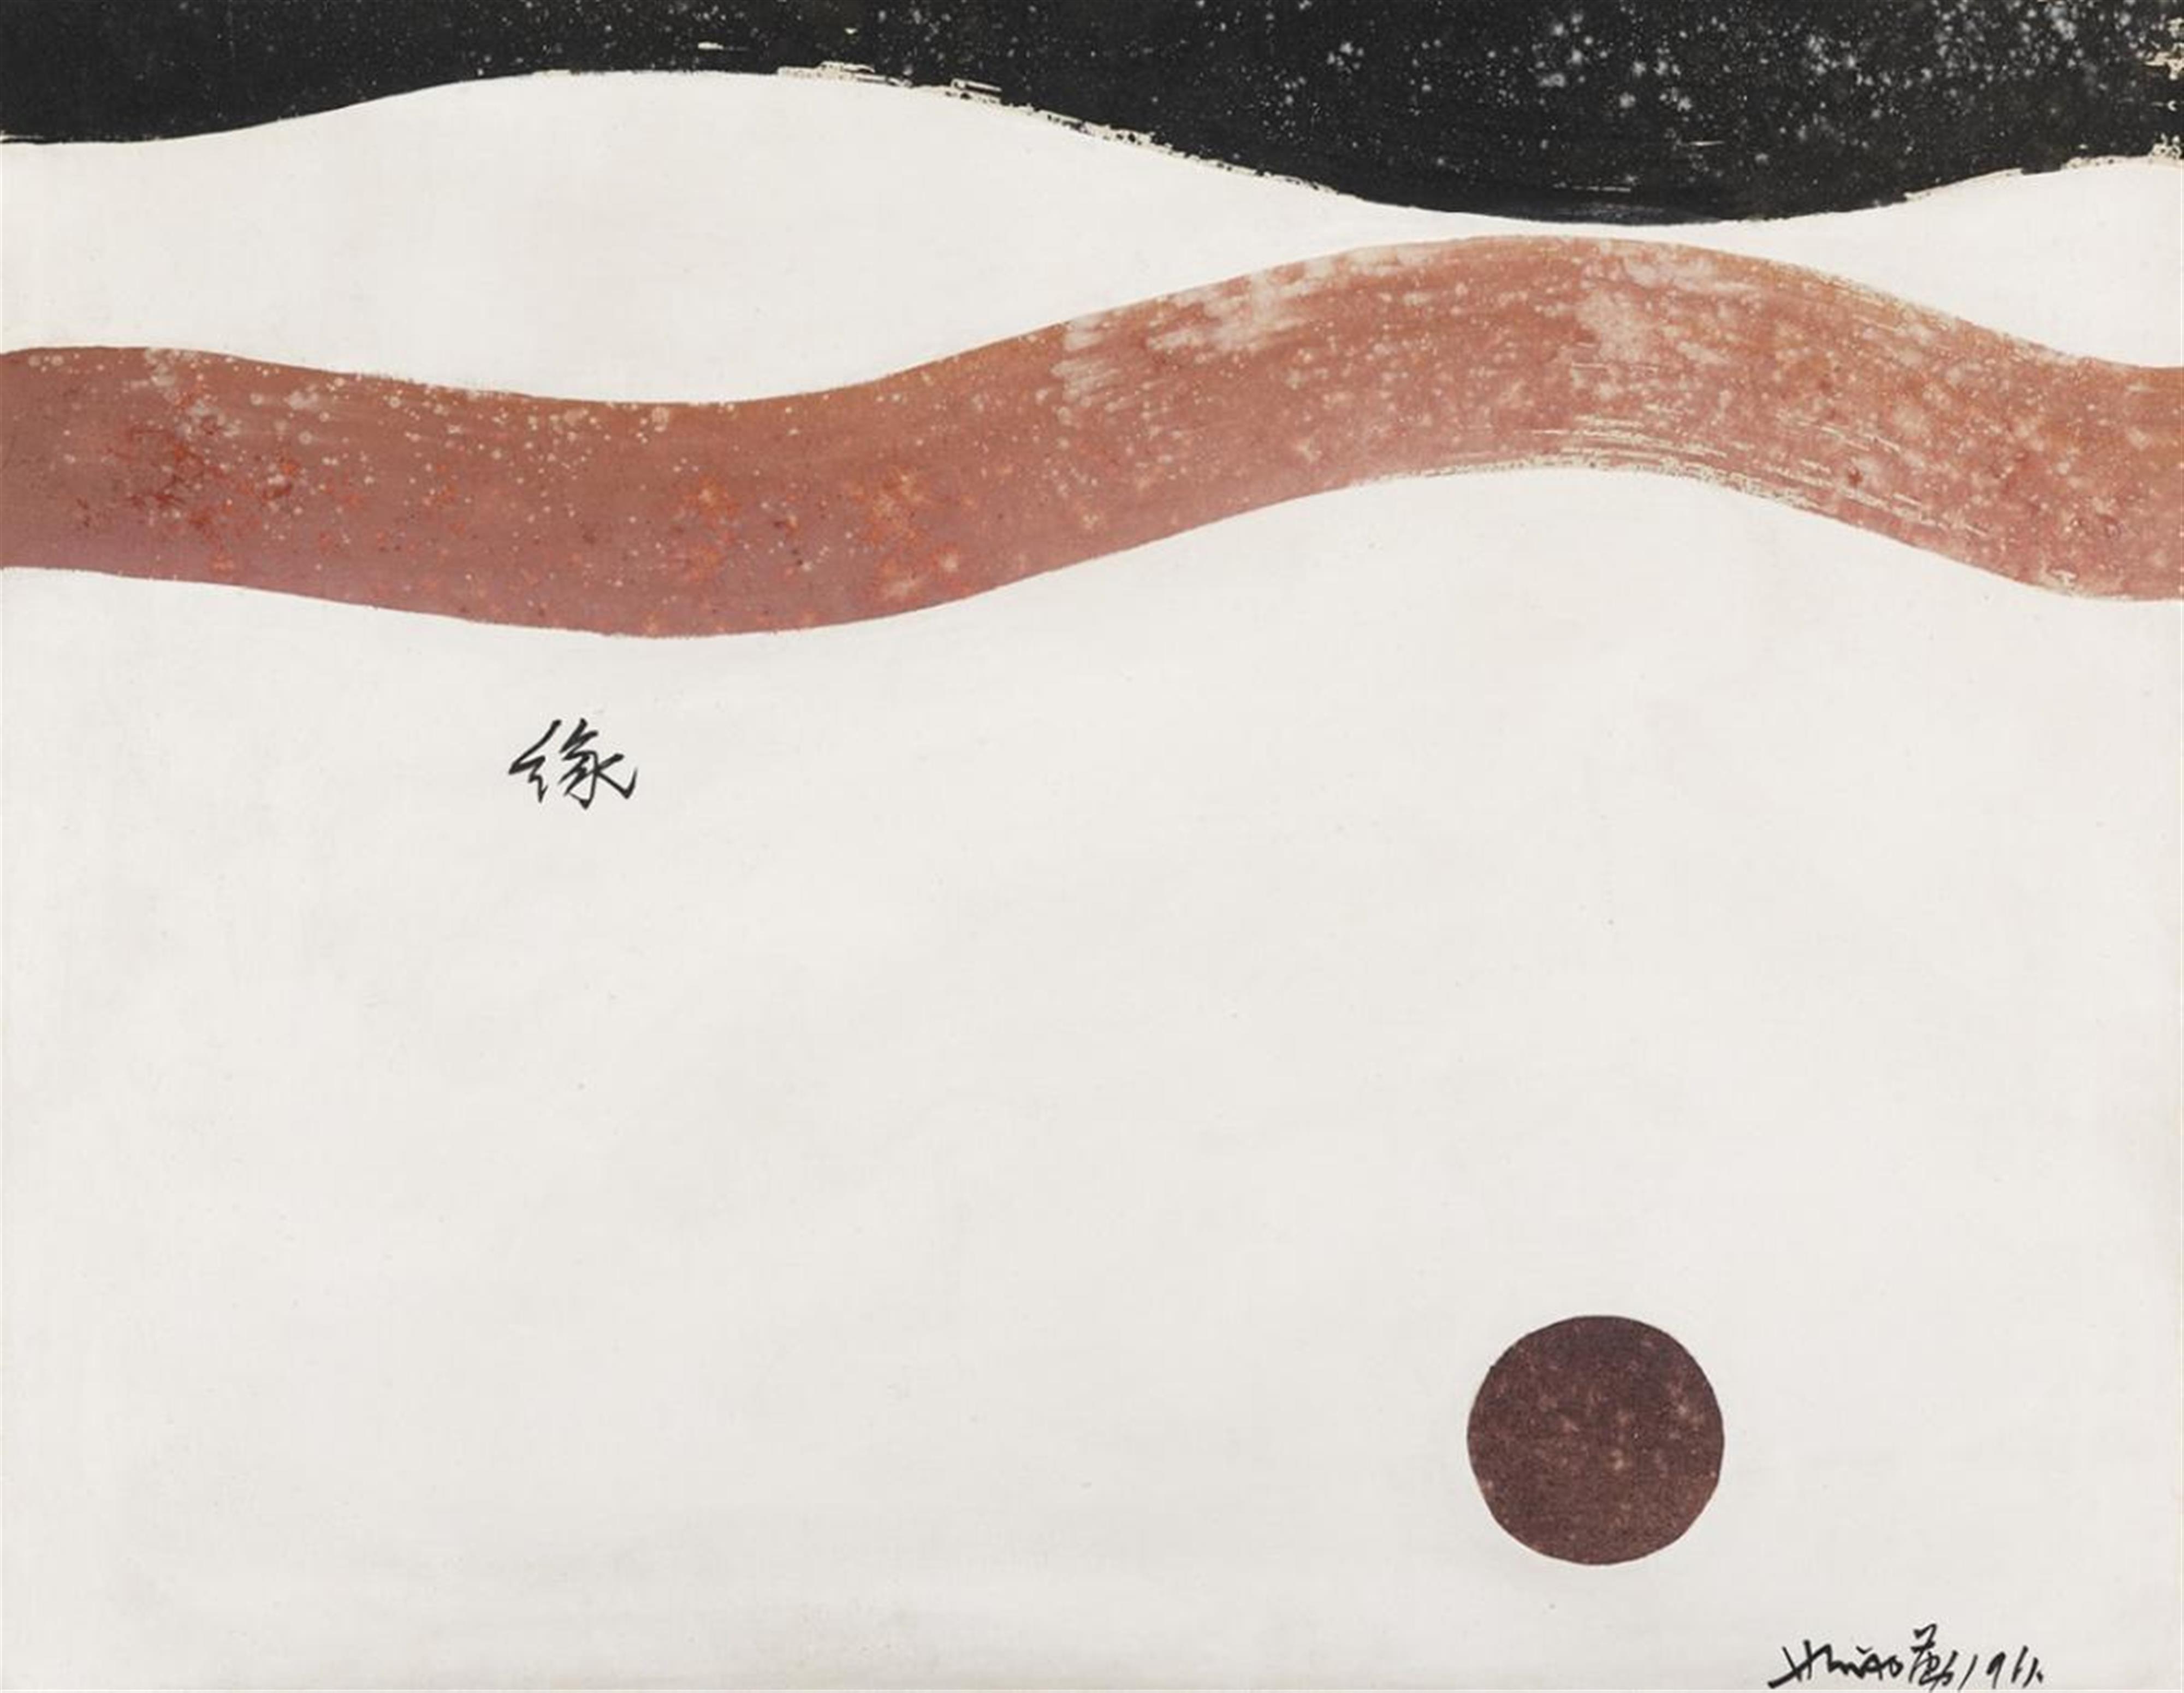 Hsiao Chin (Xiao Qin) - Komposition mit Streifen und Punkten. Öl auf Leinwand. Datiert: 1961, sign.: Hsiao in pinyin und Qin als Schriftzeichen. - image-1